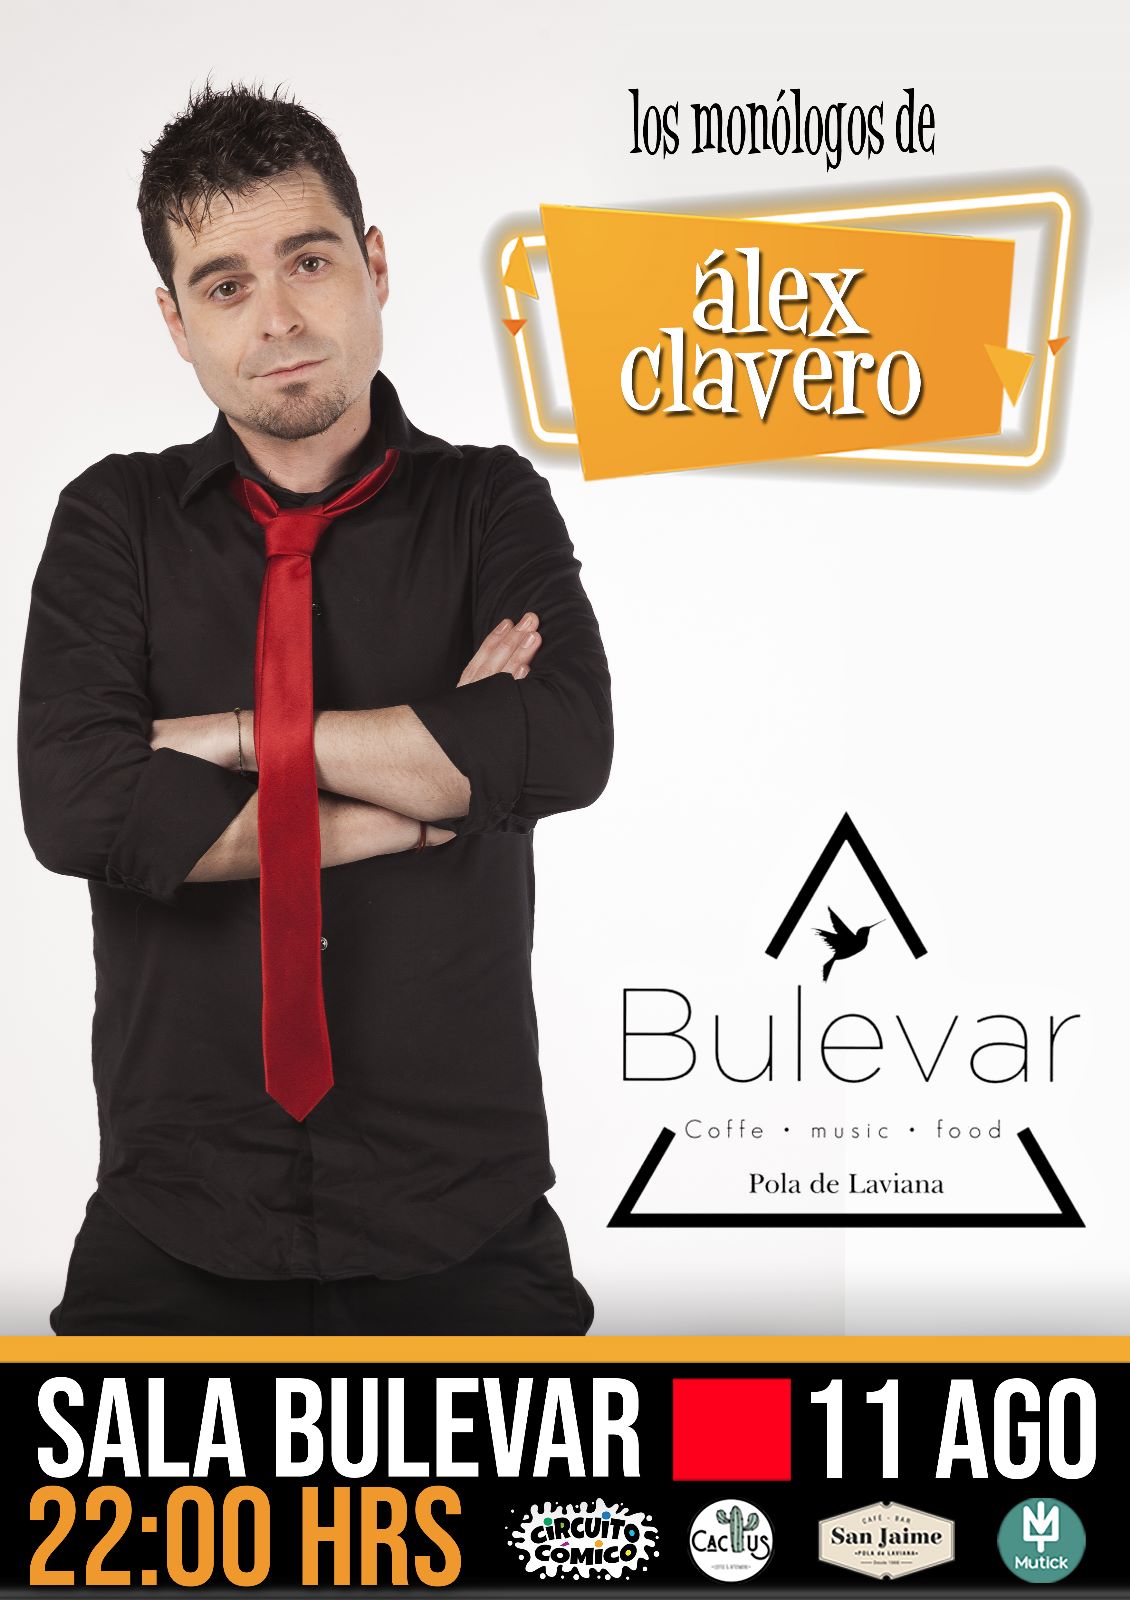 Viernes de comedia en Bulevar con Alex Clavero - Mutick